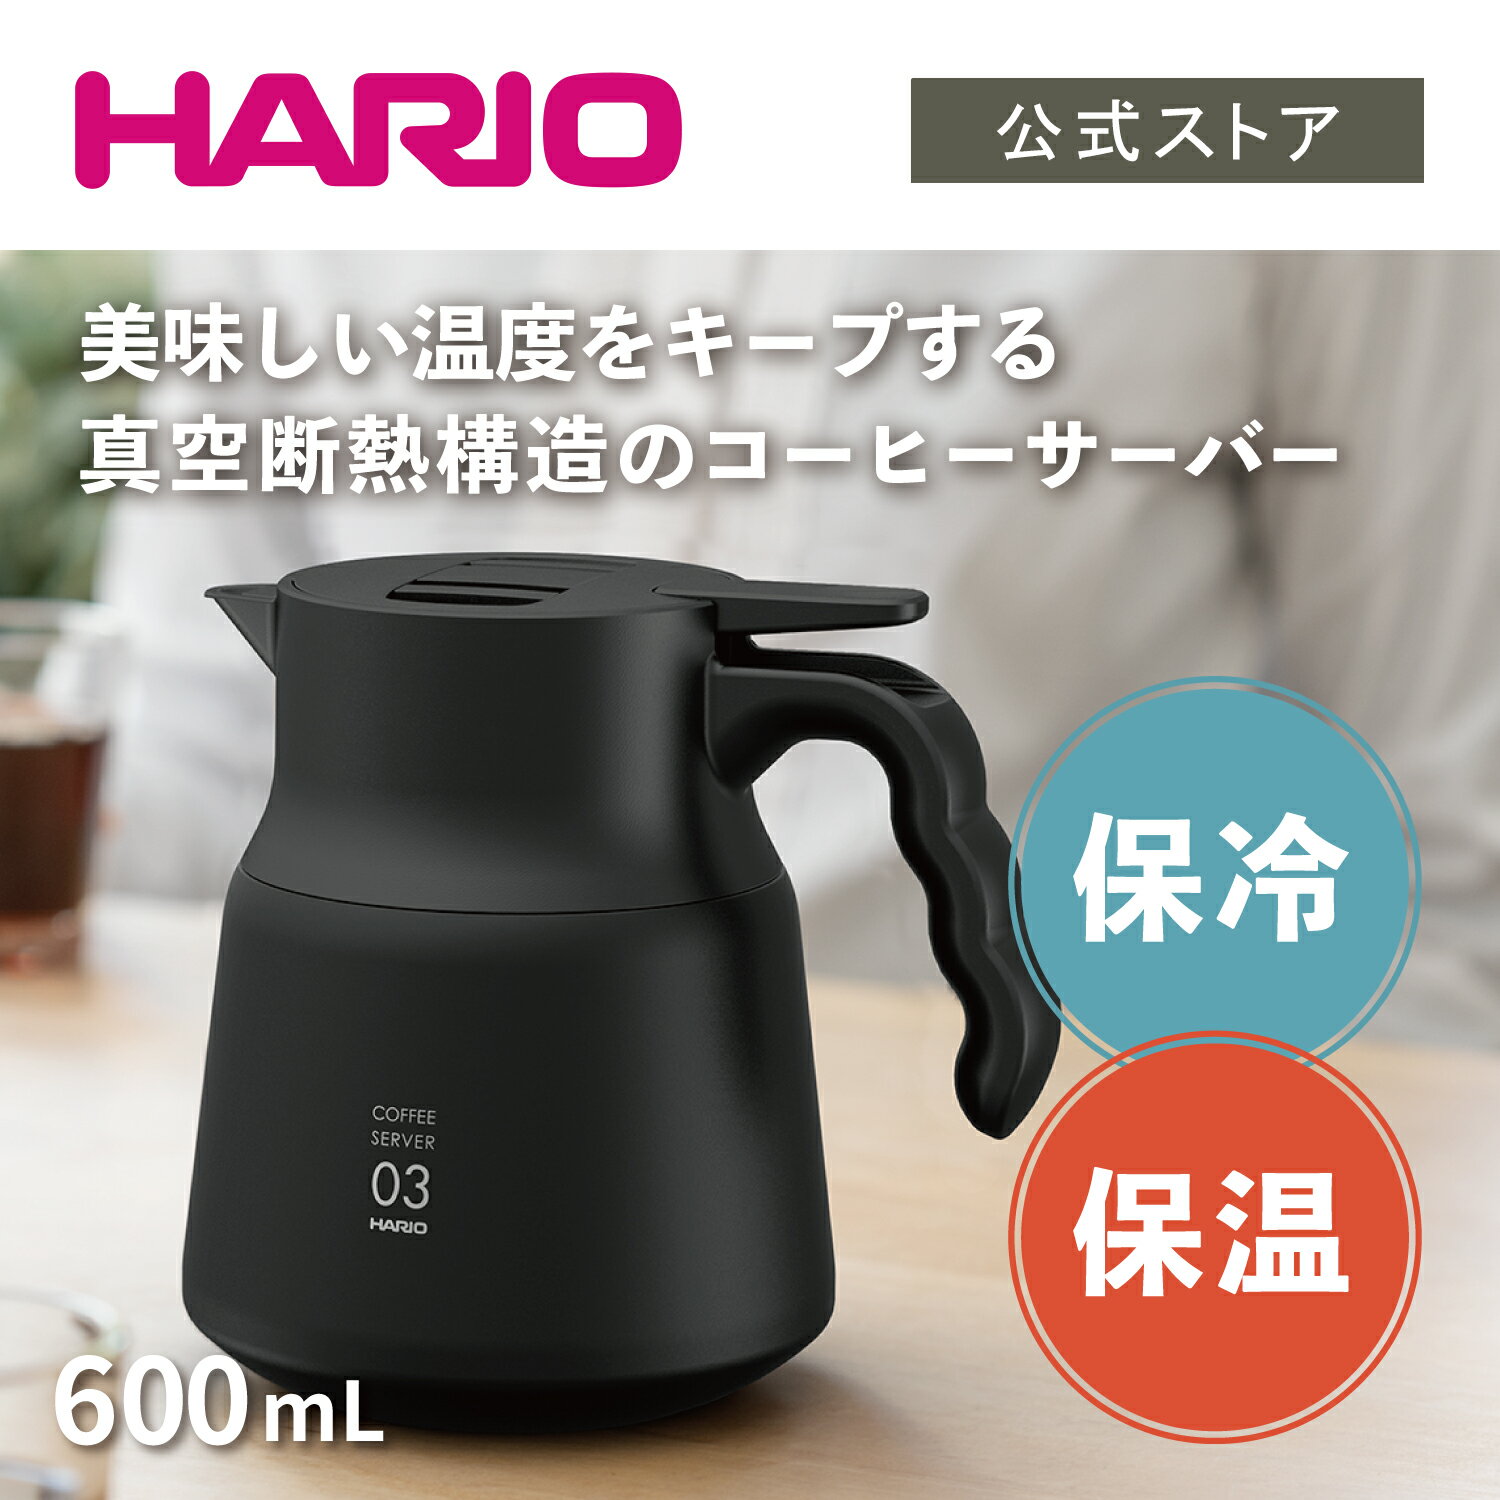 真空断熱構造のステンレス製コーヒーサーバー HARIO ハリオ V60 保温ステンレスサーバーPLUS 600 ブラック 600ml 保温ポット  魔法瓶 卓上ポット ステンレス コーヒーサーバー 【使い勝手の良い】 保温 公式 保冷 おしゃれ